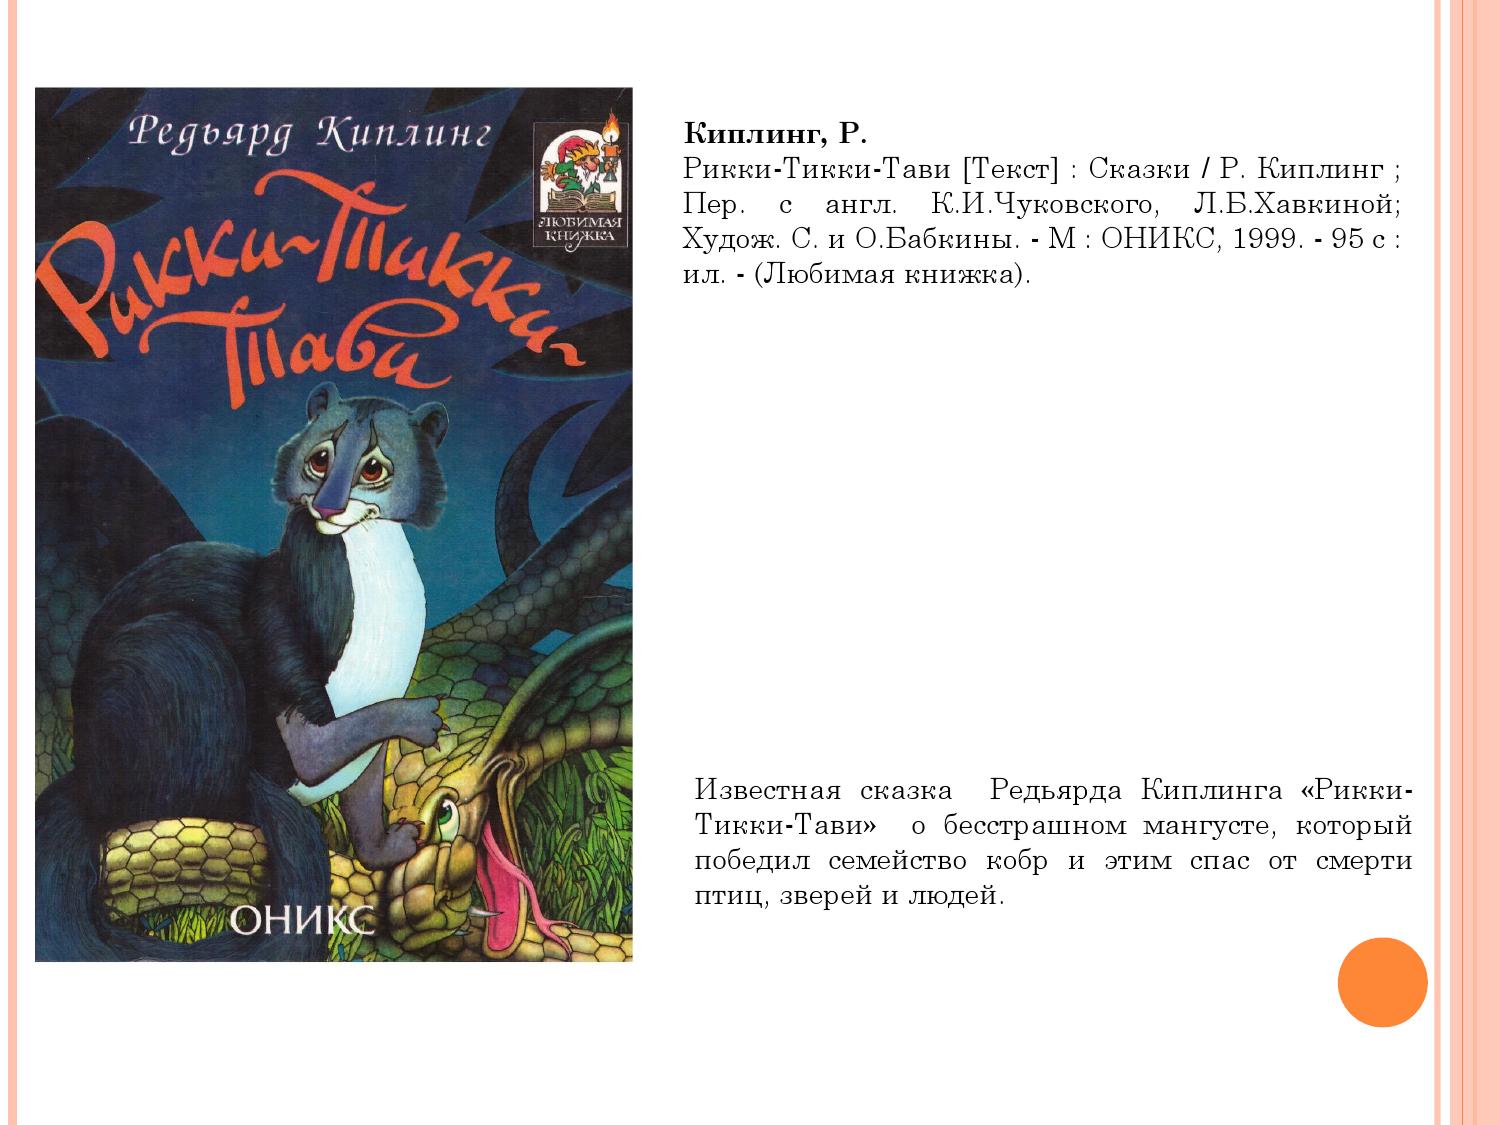 Слоненок - сказки киплинга: читать с картинками, иллюстрациями - сказка dy9.ru